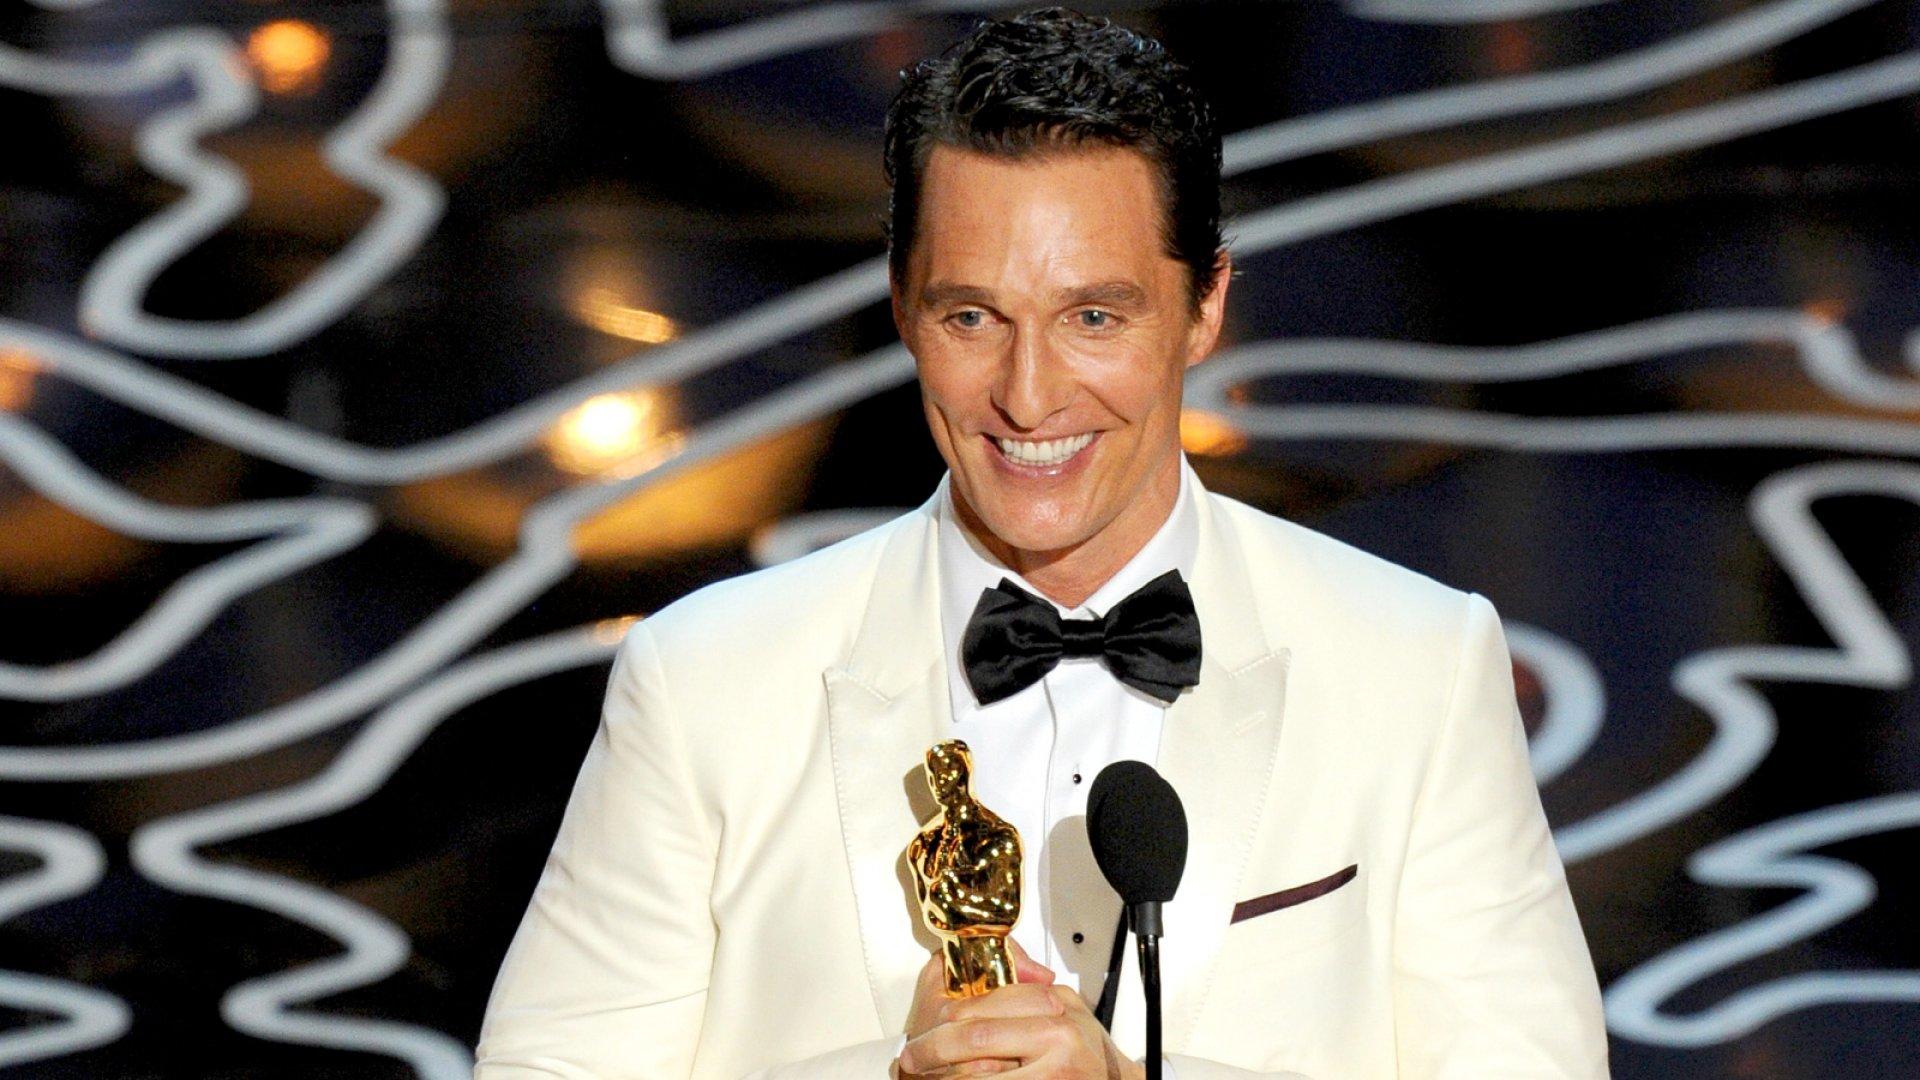 خطاب Matthew McConaughey حين فاز بأوسكار أفضل ممثل سنة 2014 : خطاب إنساني معبر